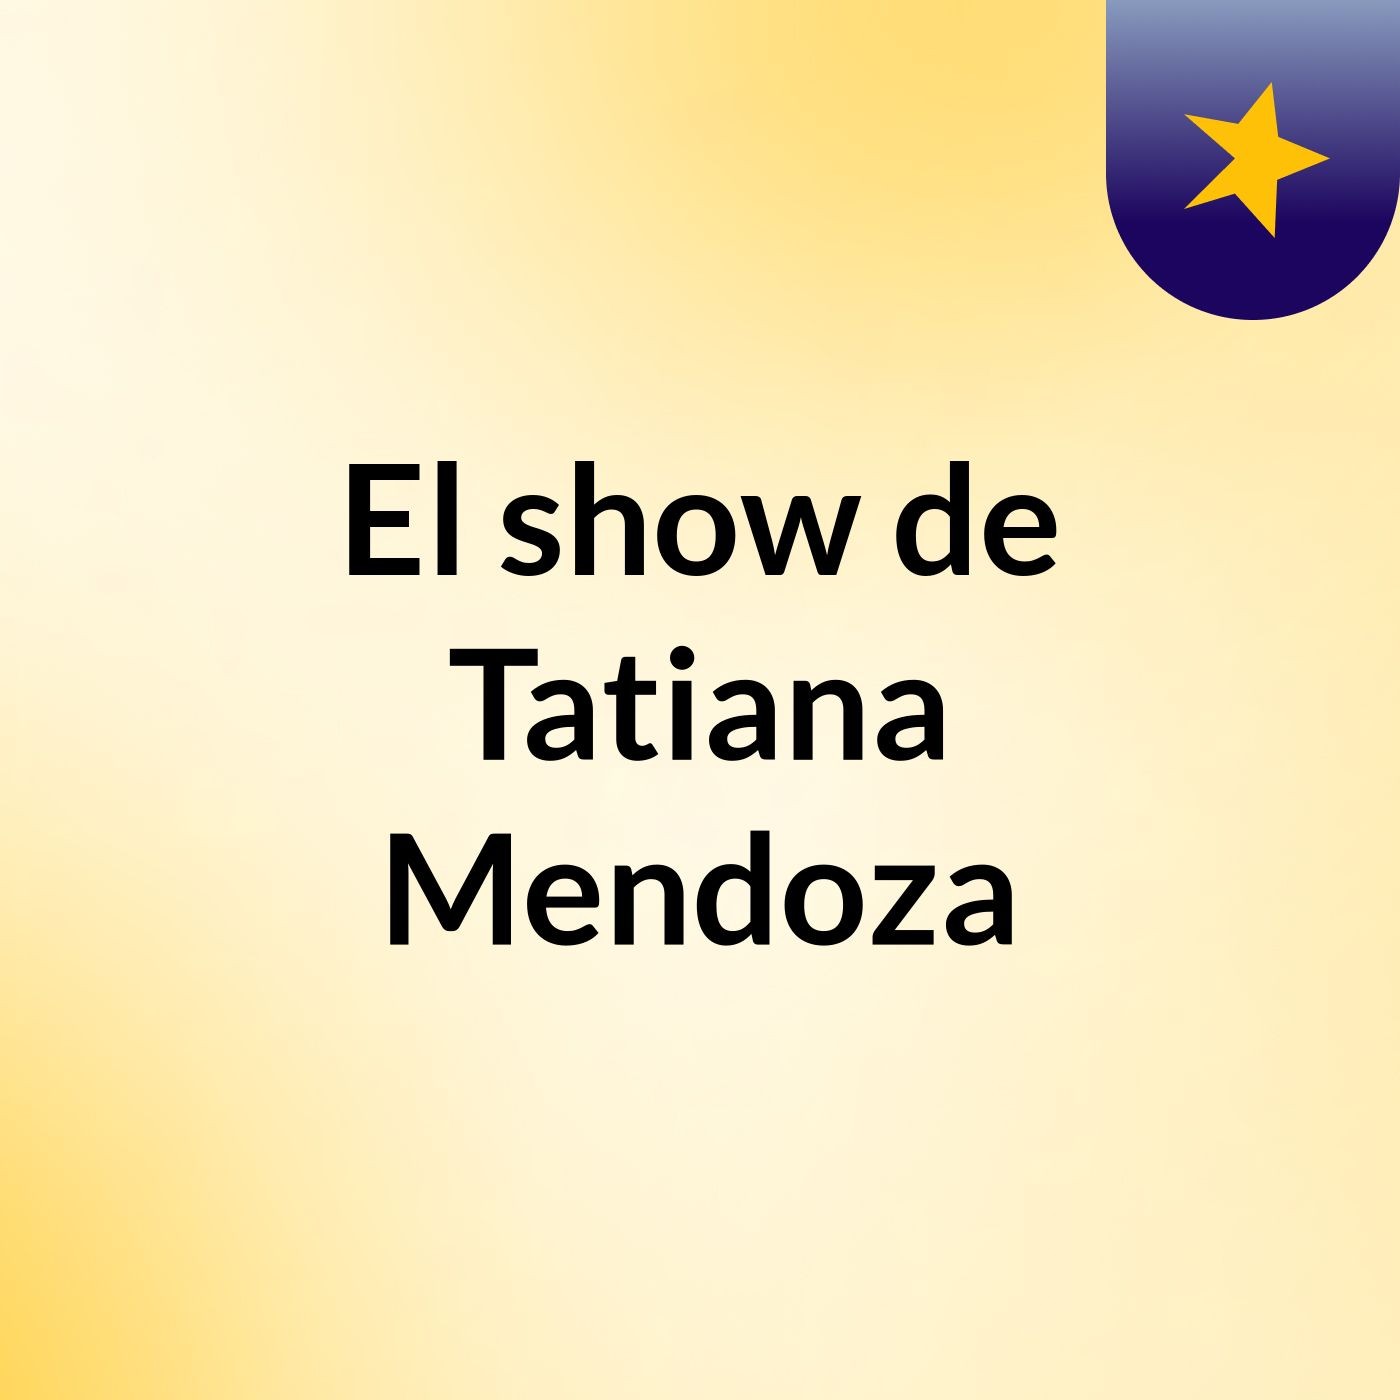 El show de Tatiana Mendoza